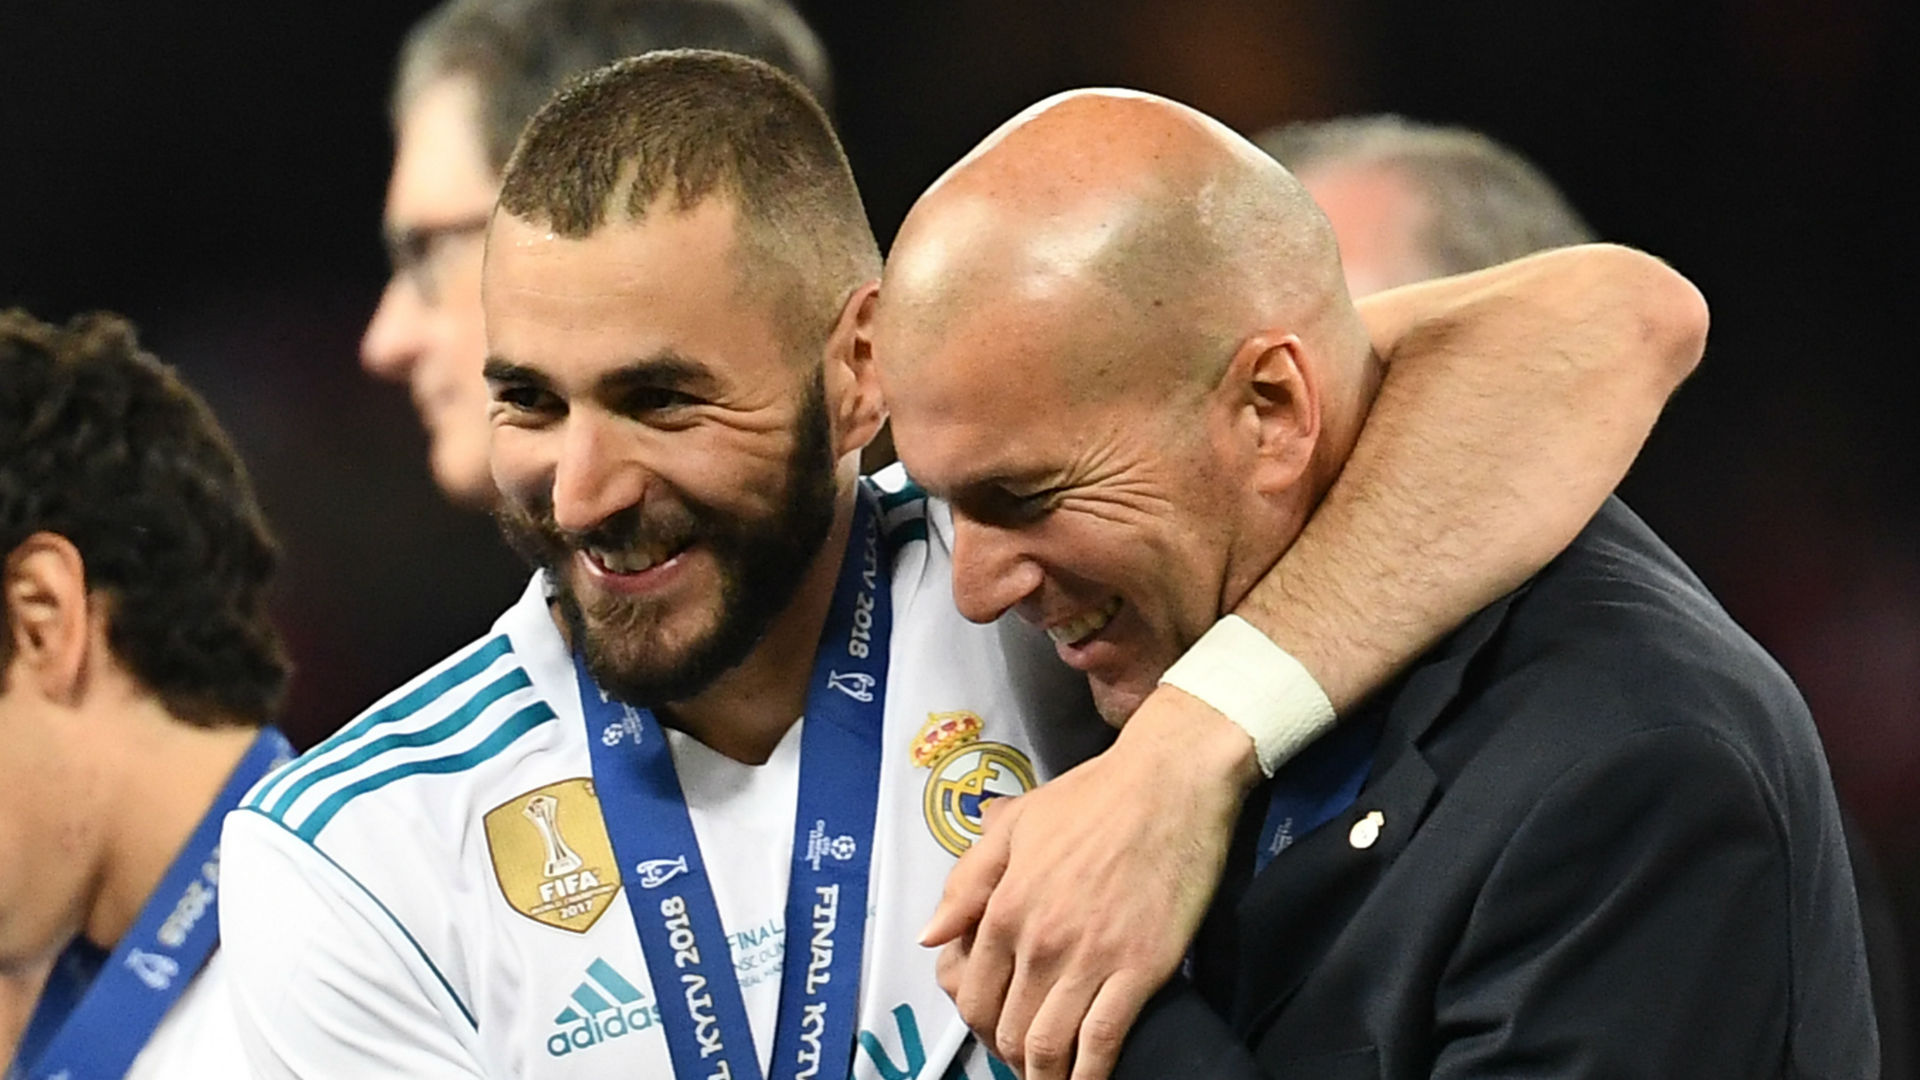 VIDEO - Les fans du Real Madrid rendent hommage à Zidane et Benzema